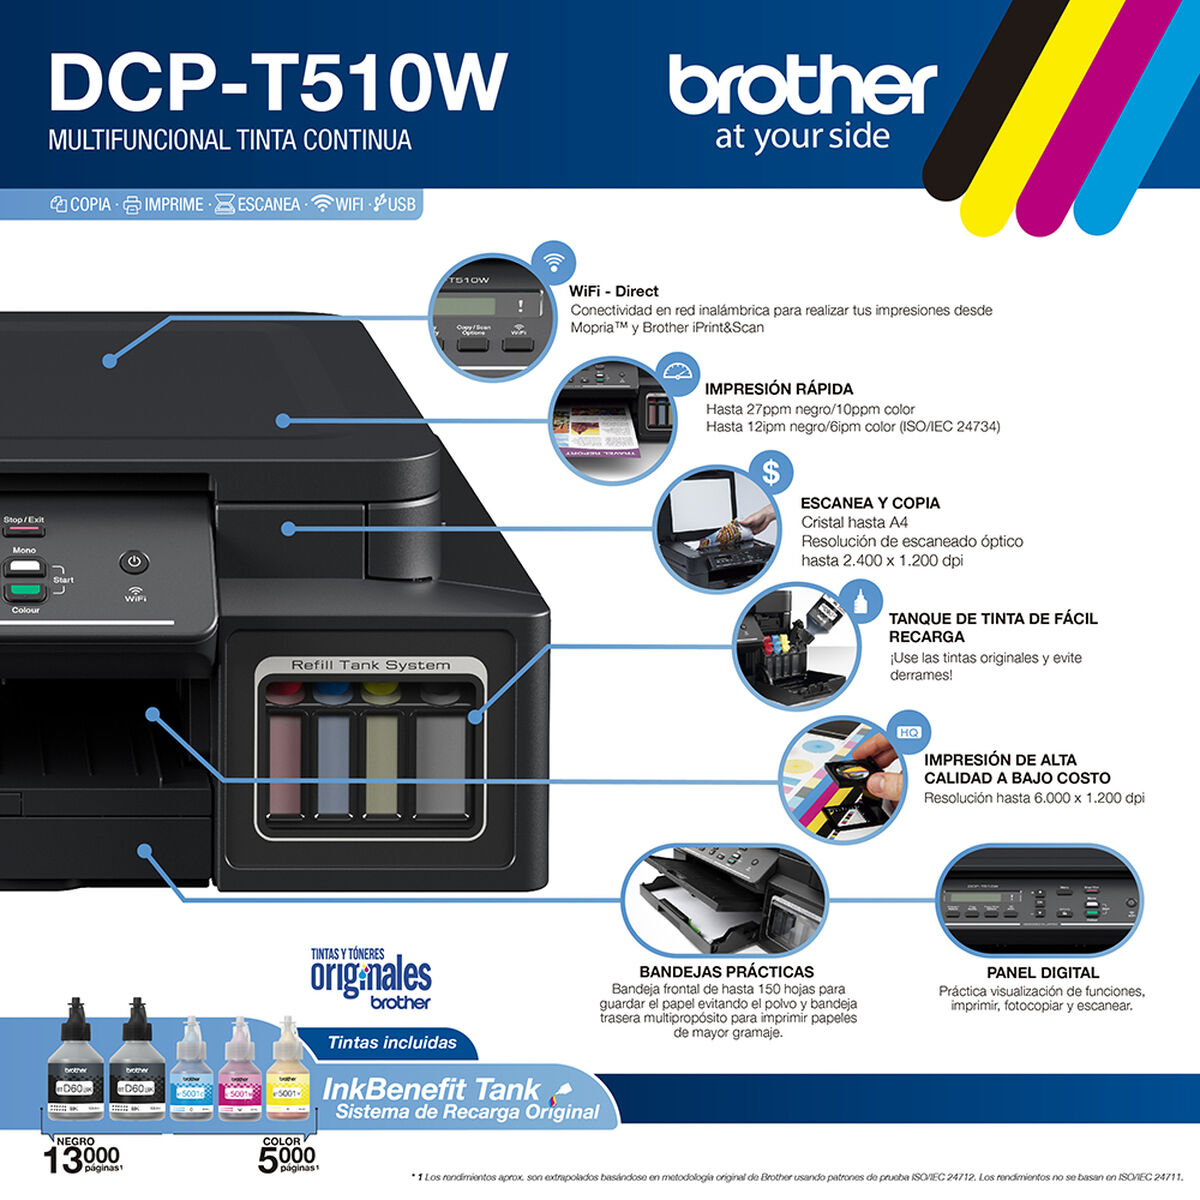 Multifuncional Brother Tinta Continua DCP-T510W WiFi